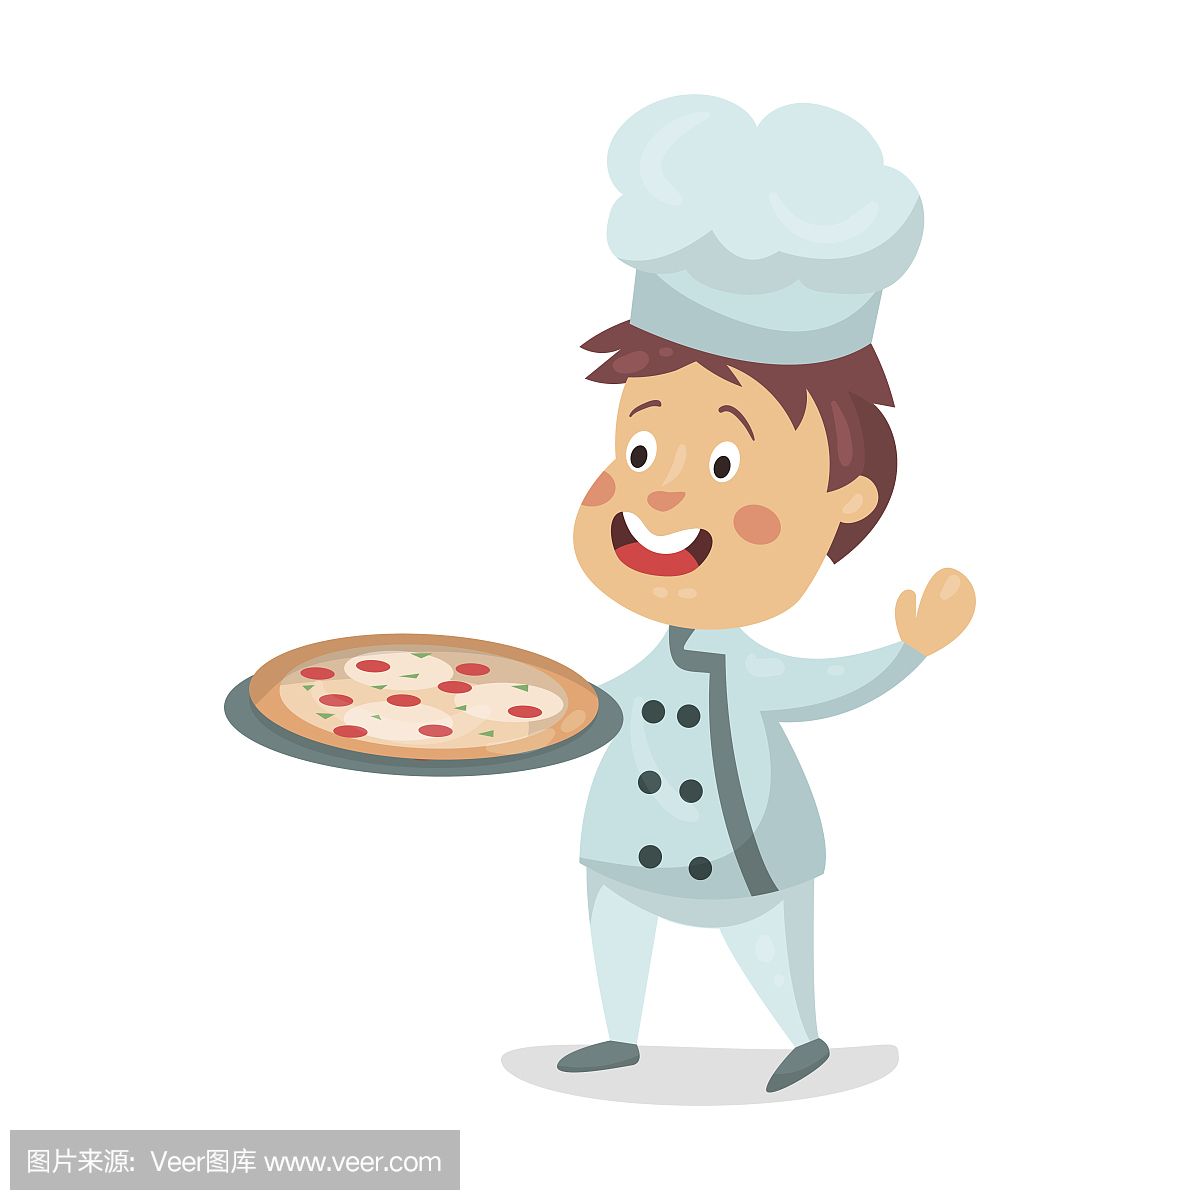 可爱的卡通小男孩厨师人物拿着比萨饼在烹饪托